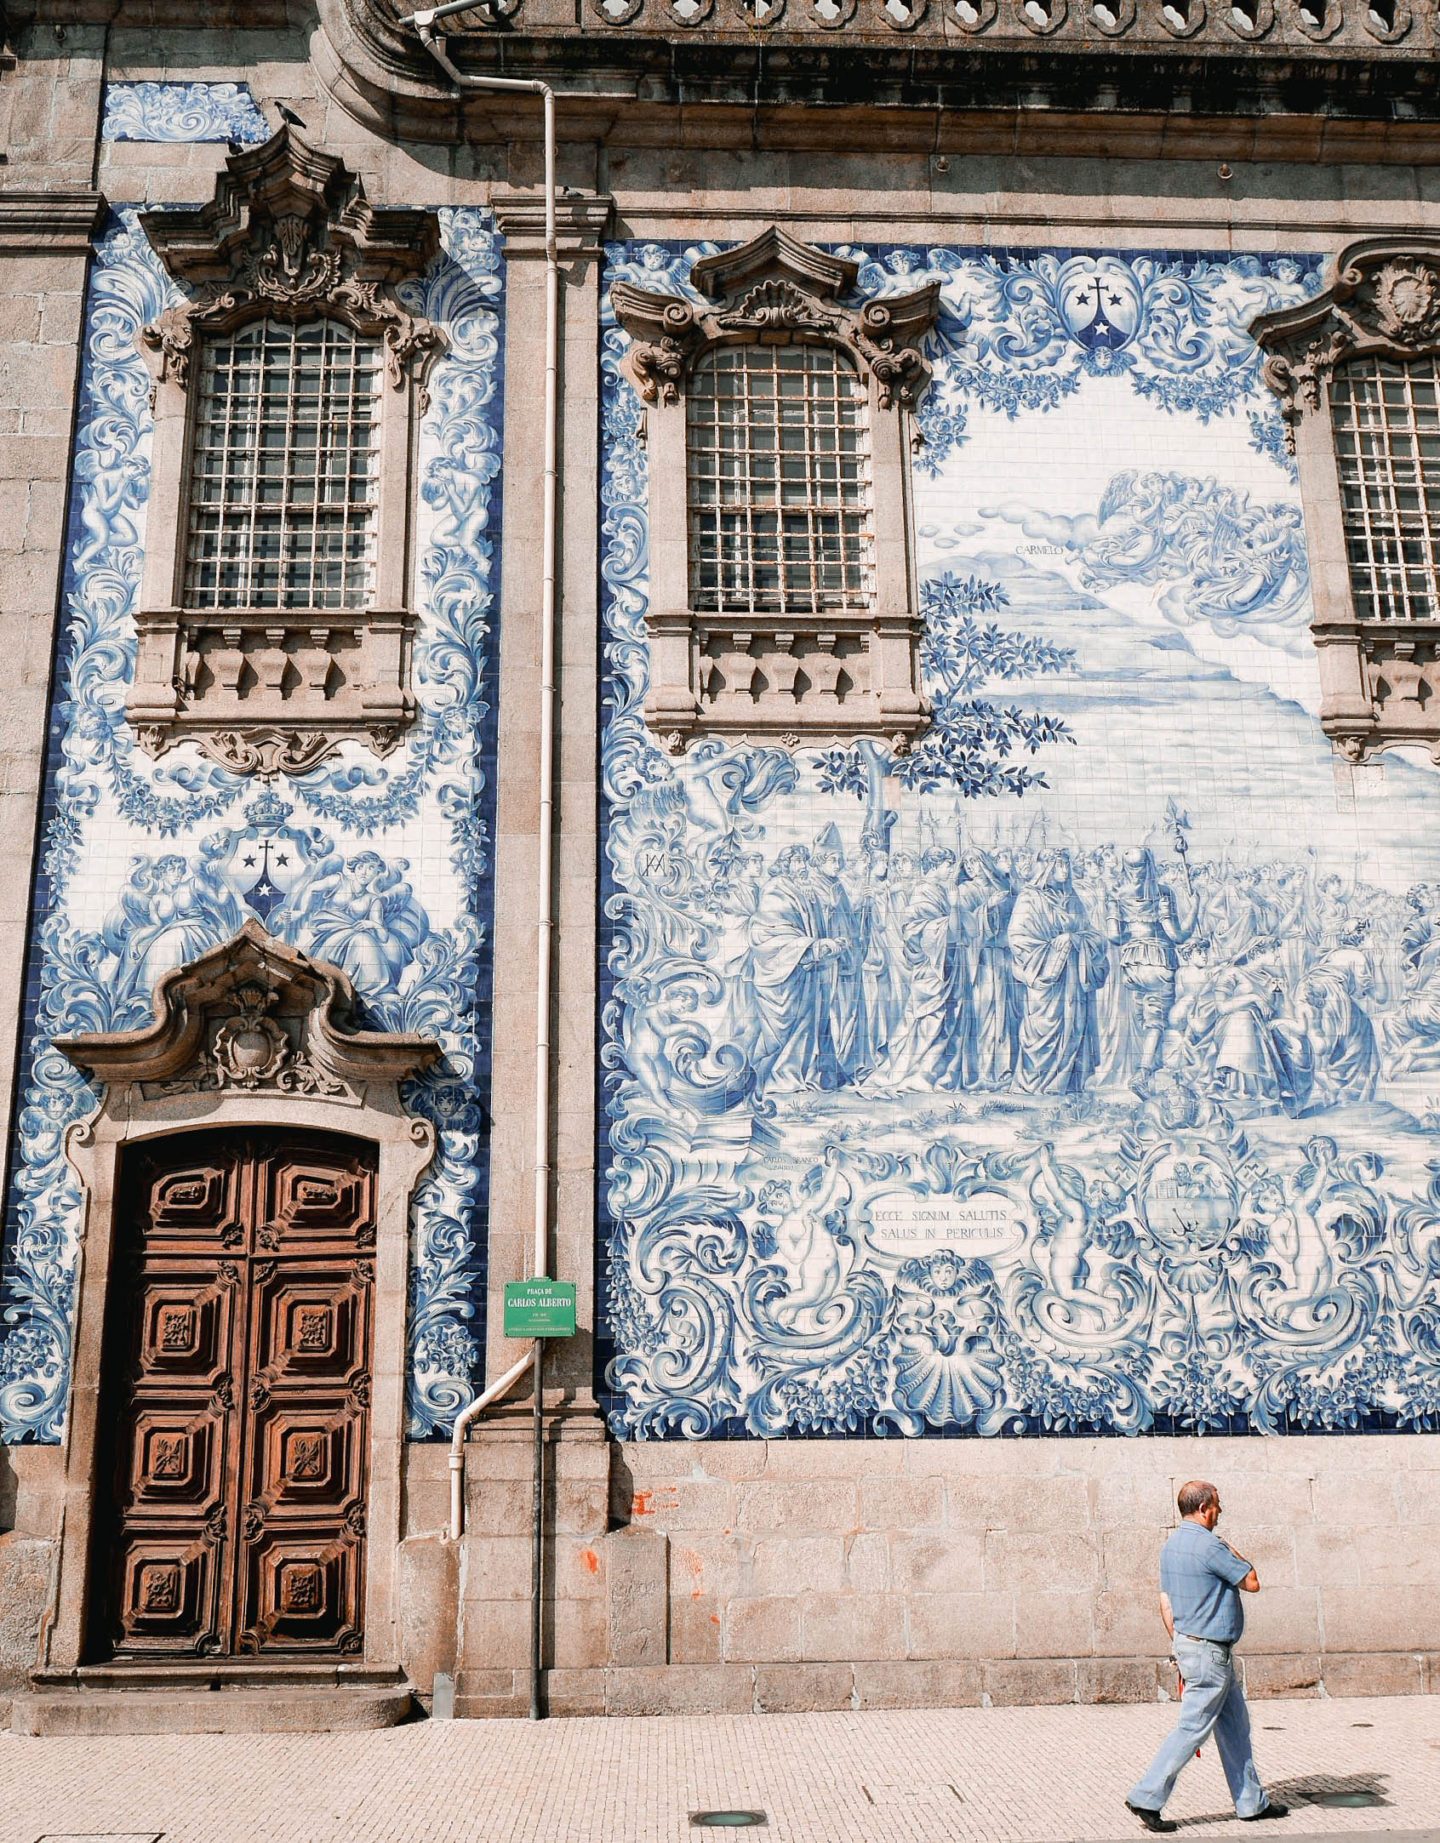 The Ultimate Guide to Porto, Portugal